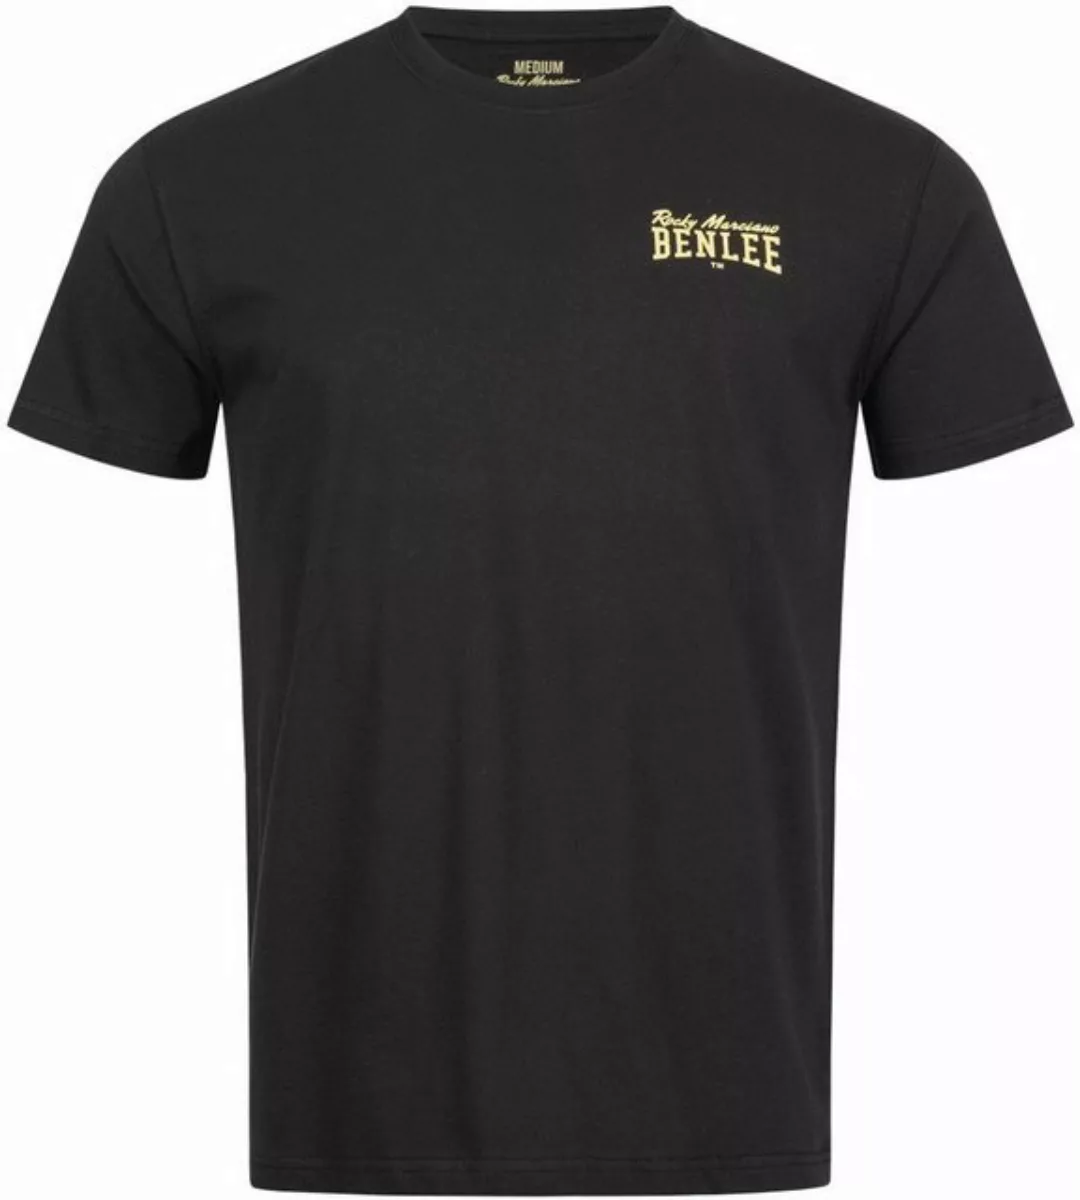 Benlee Rocky Marciano T-Shirt Luka günstig online kaufen